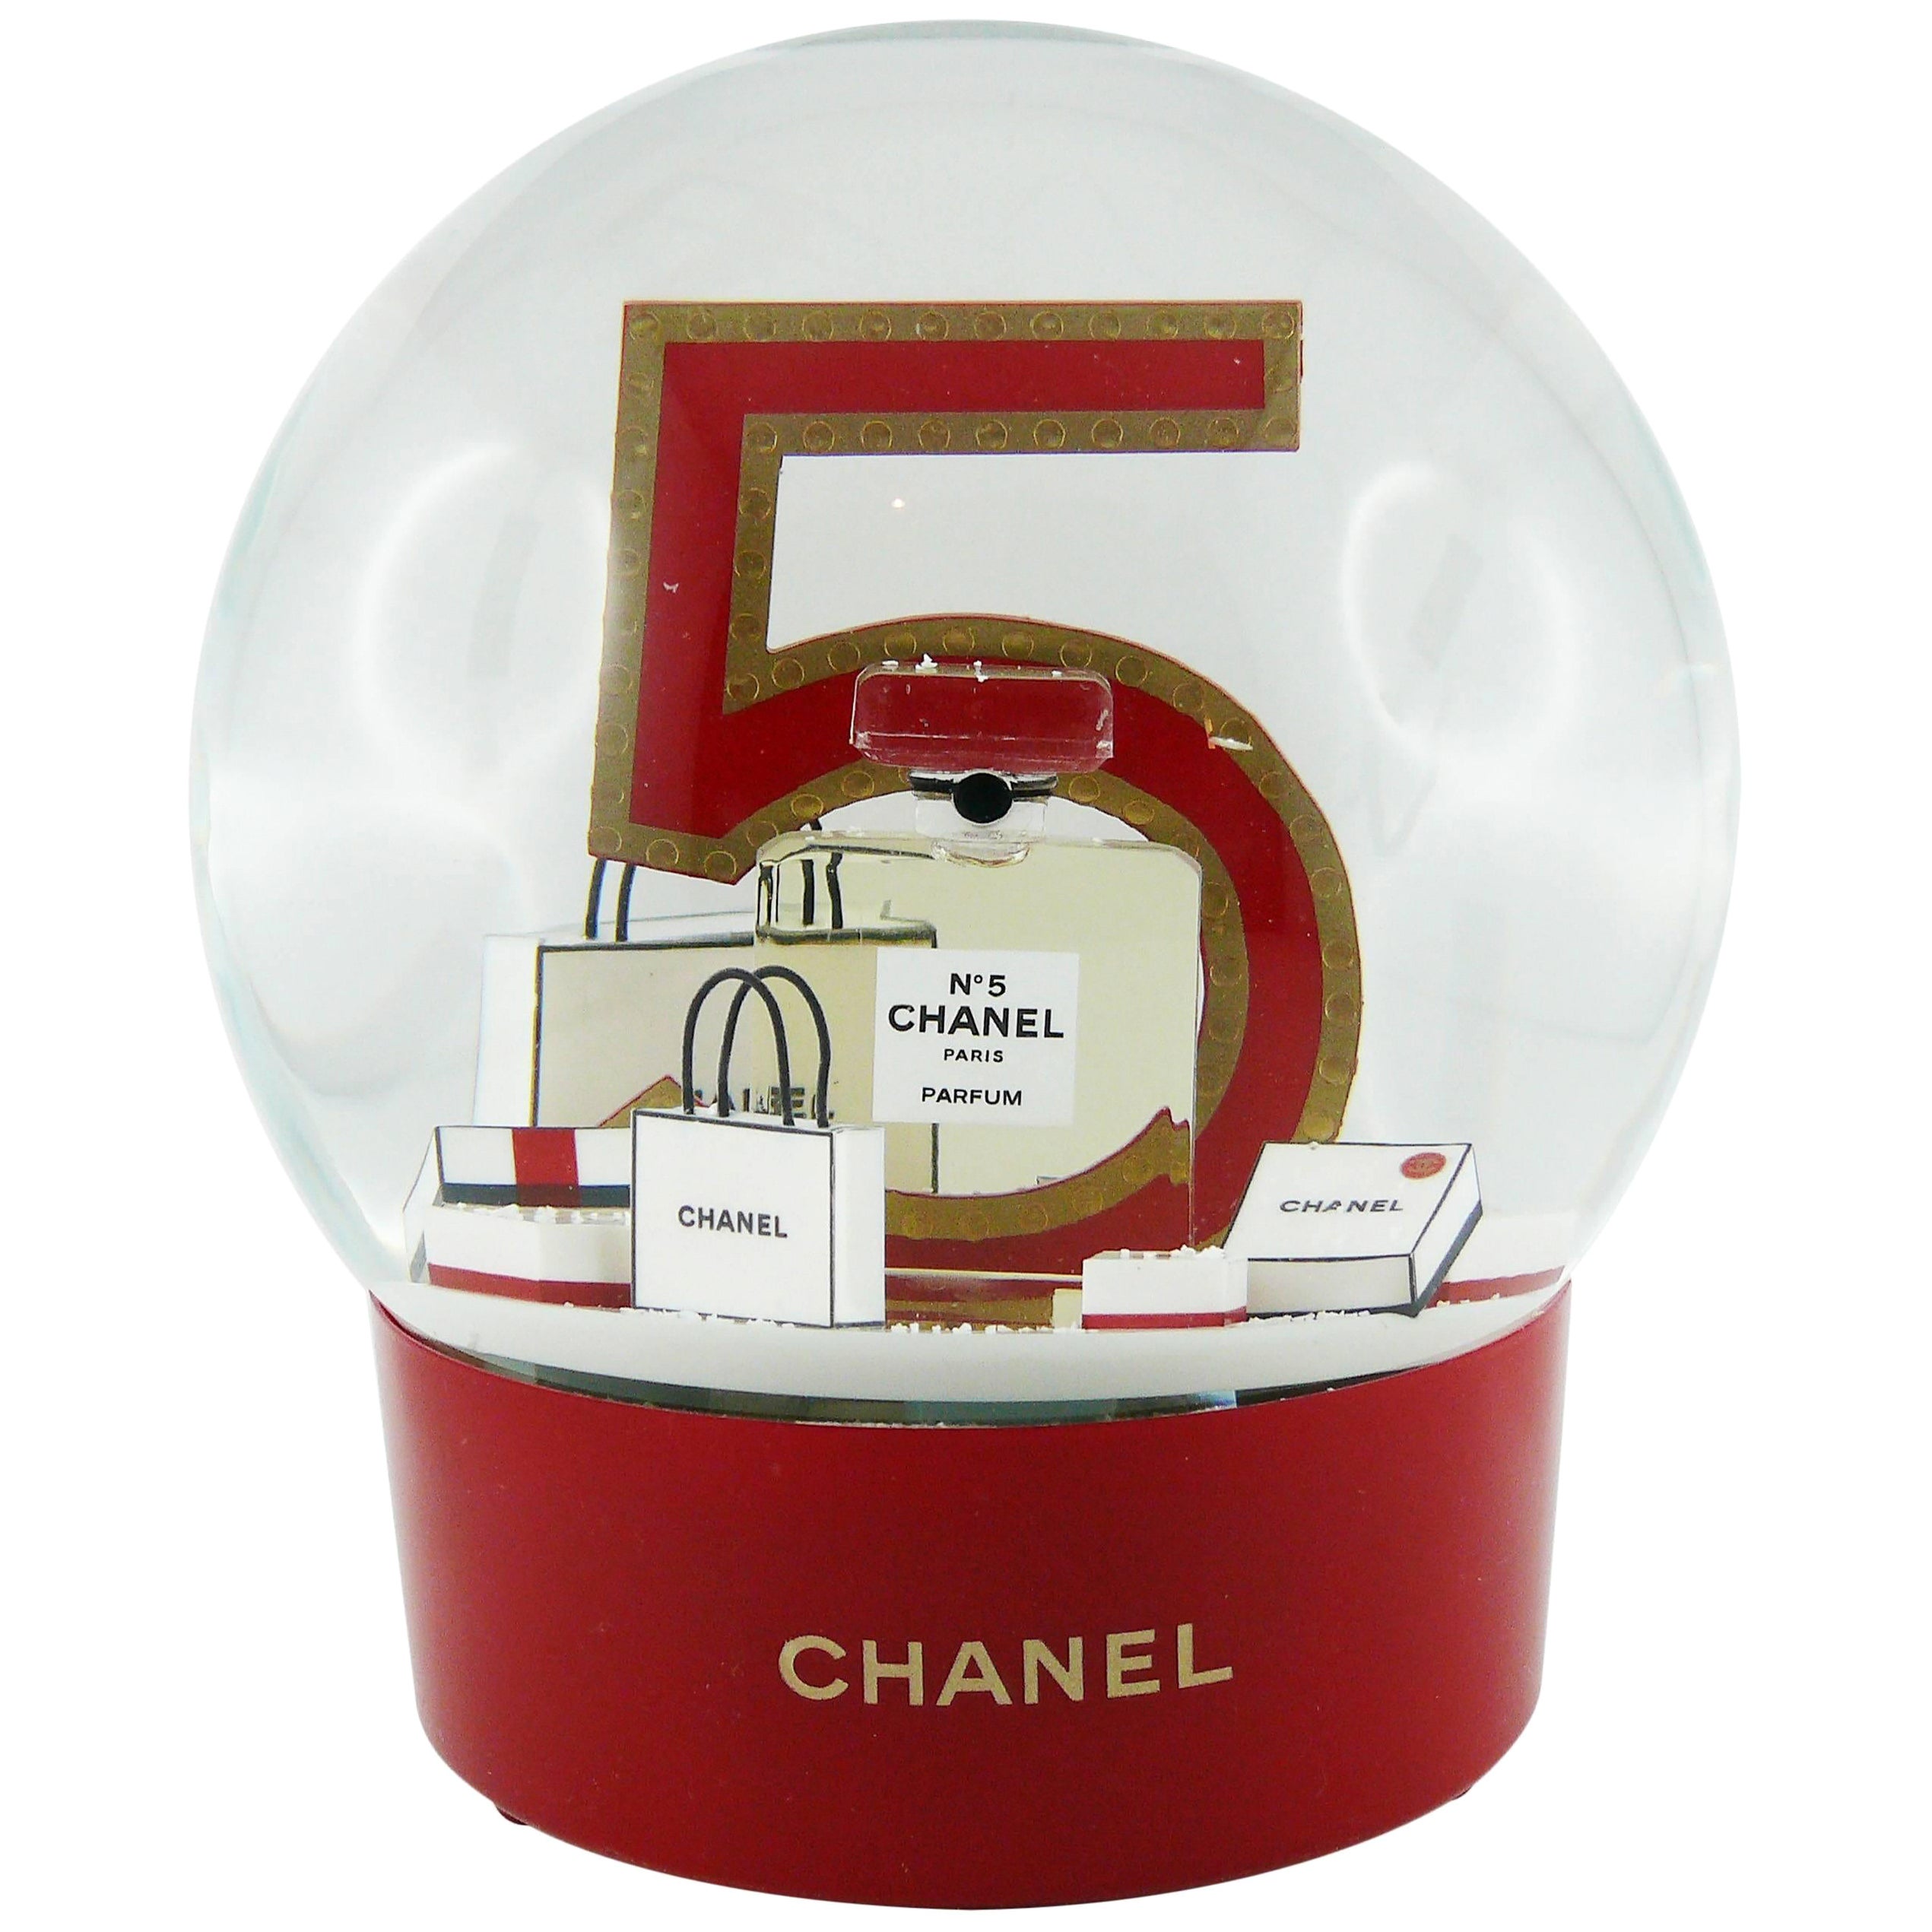 Chanel Vip Gift - 4 For Sale on 1stDibs  chanel vip gifts for sale, how to  get chanel vip gifts, chanel vip gift bag